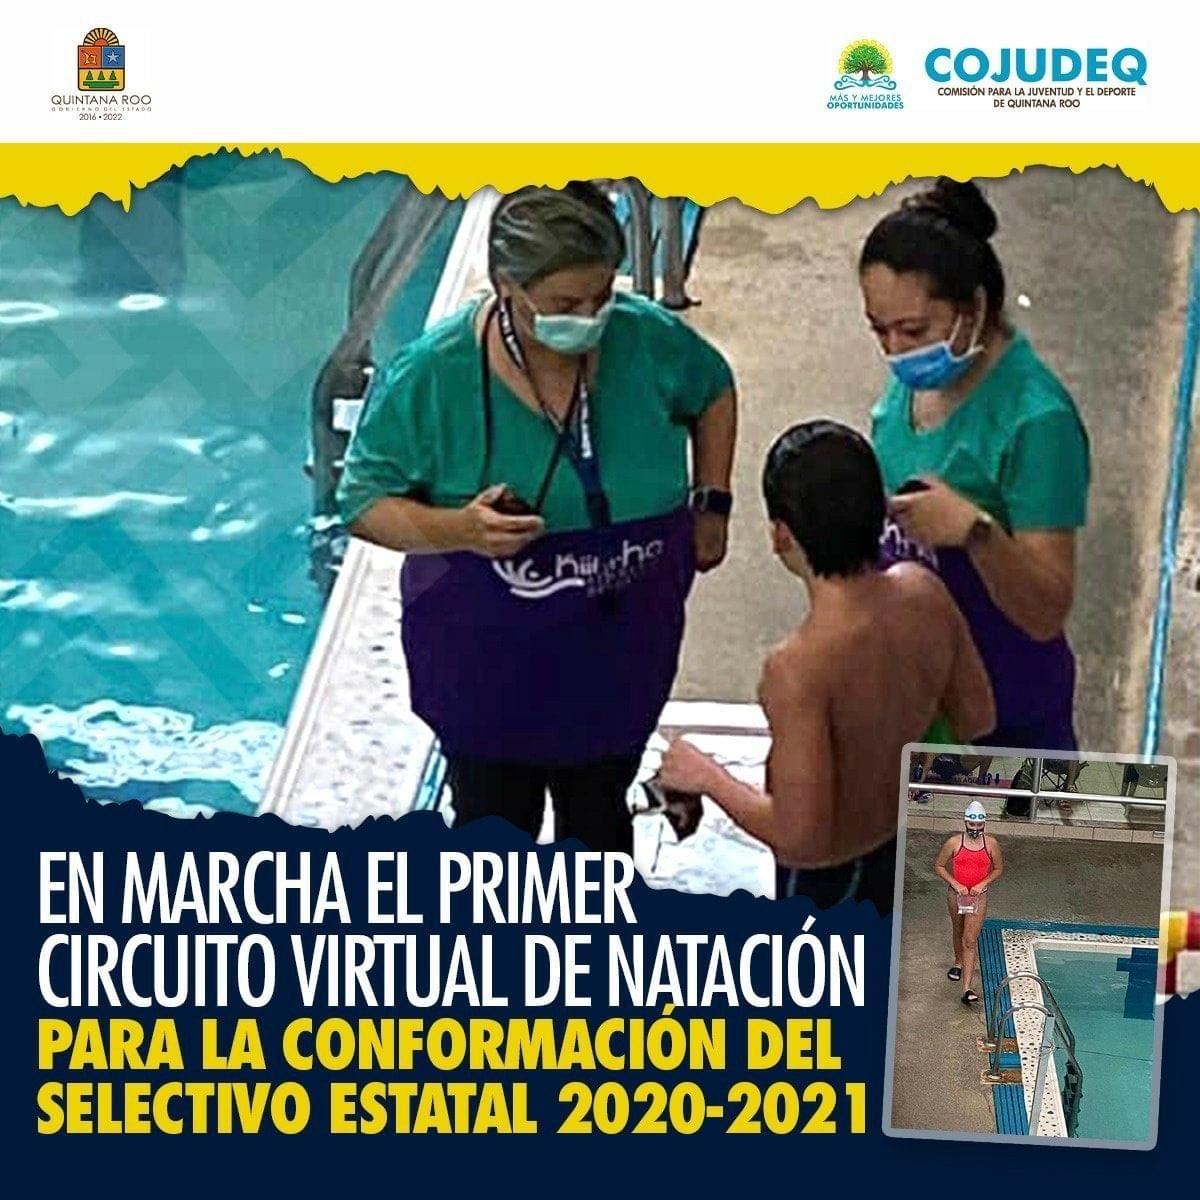 En marcha el Primer Circuito Virtual de Natación para la conformación del selectivo estatal 2020-2021